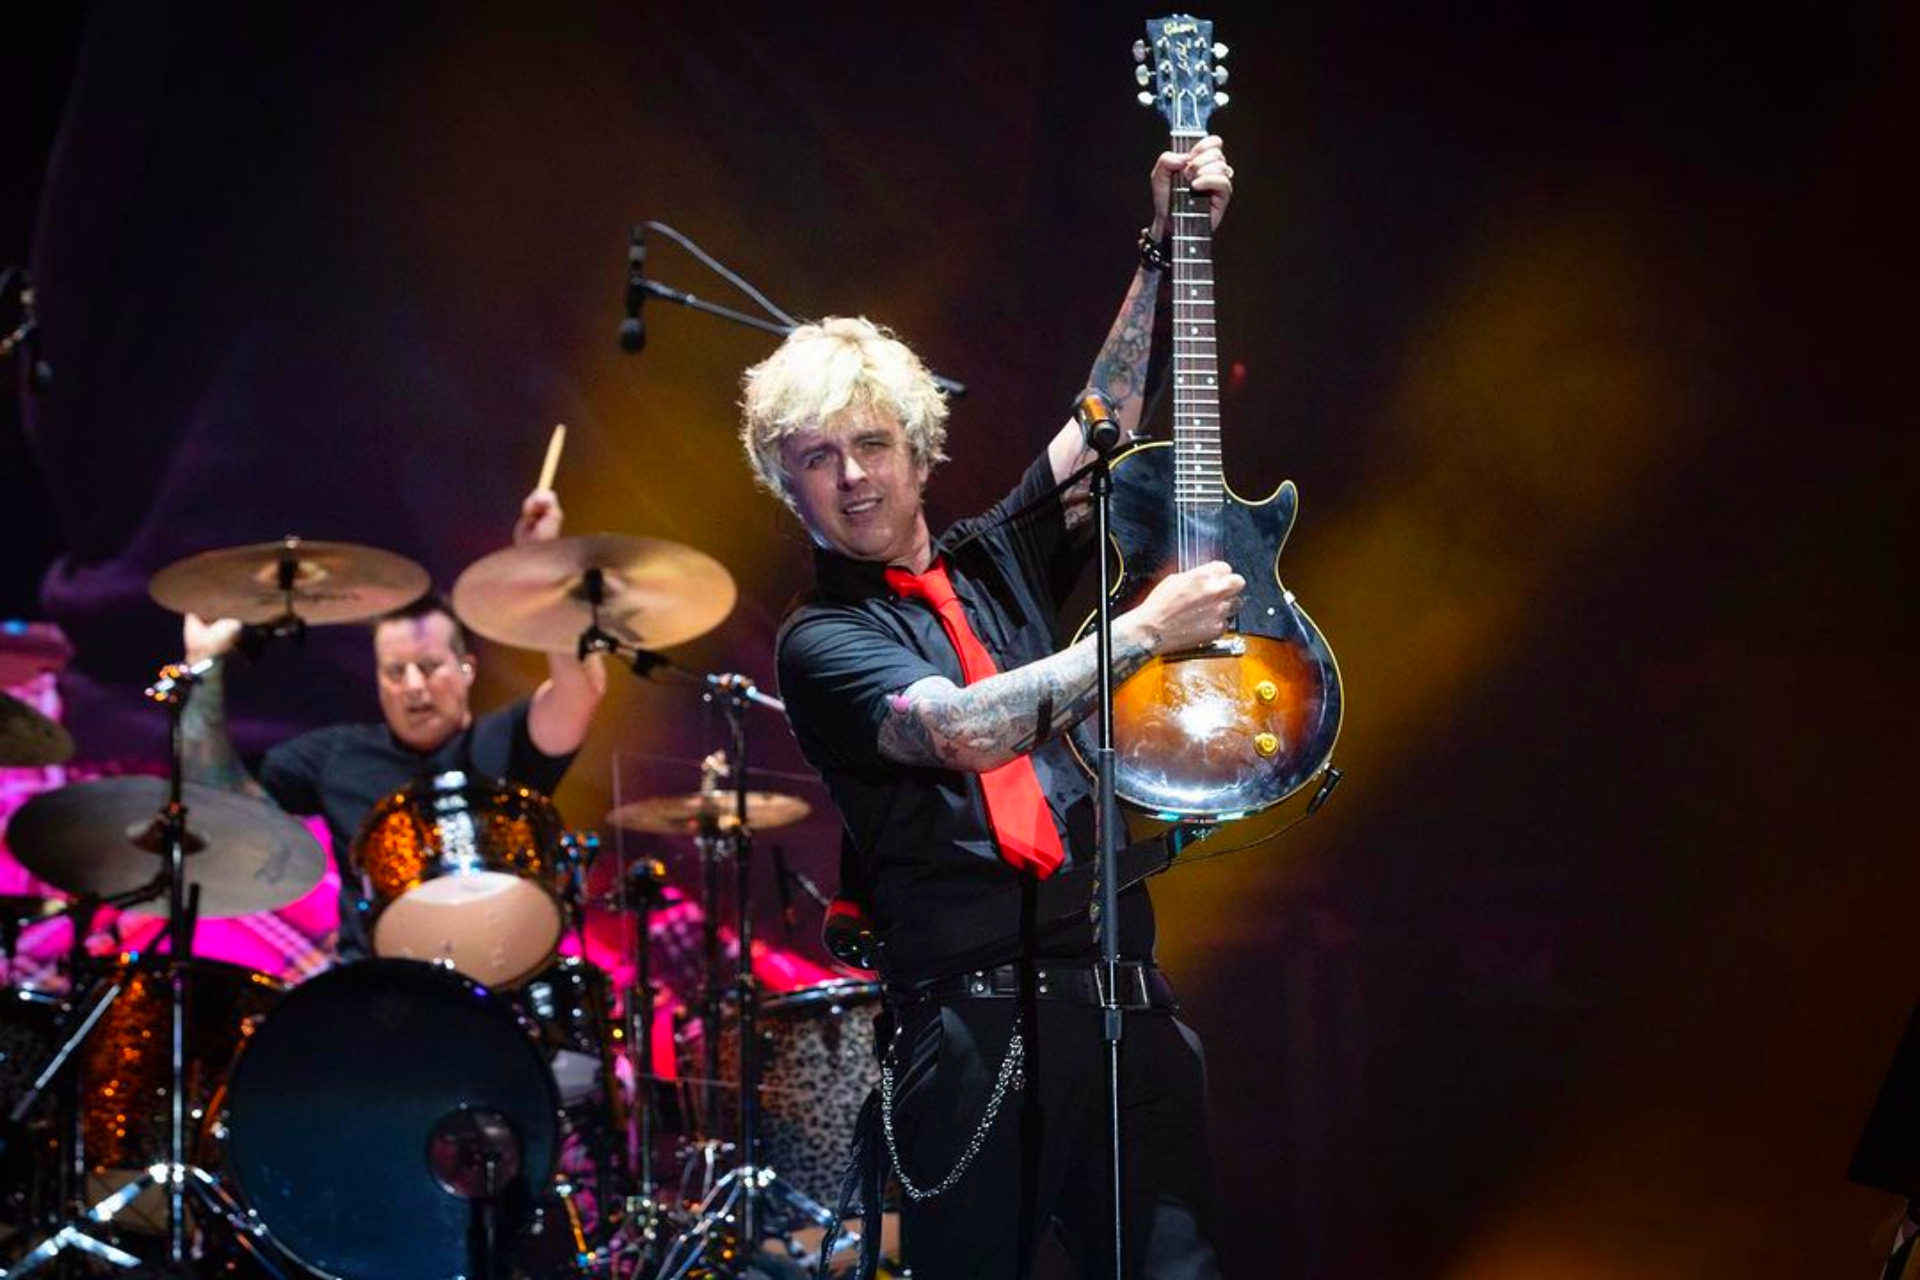 Green Day estrena en vivo su canción “1981”: Un adelanto del esperado álbum por venir